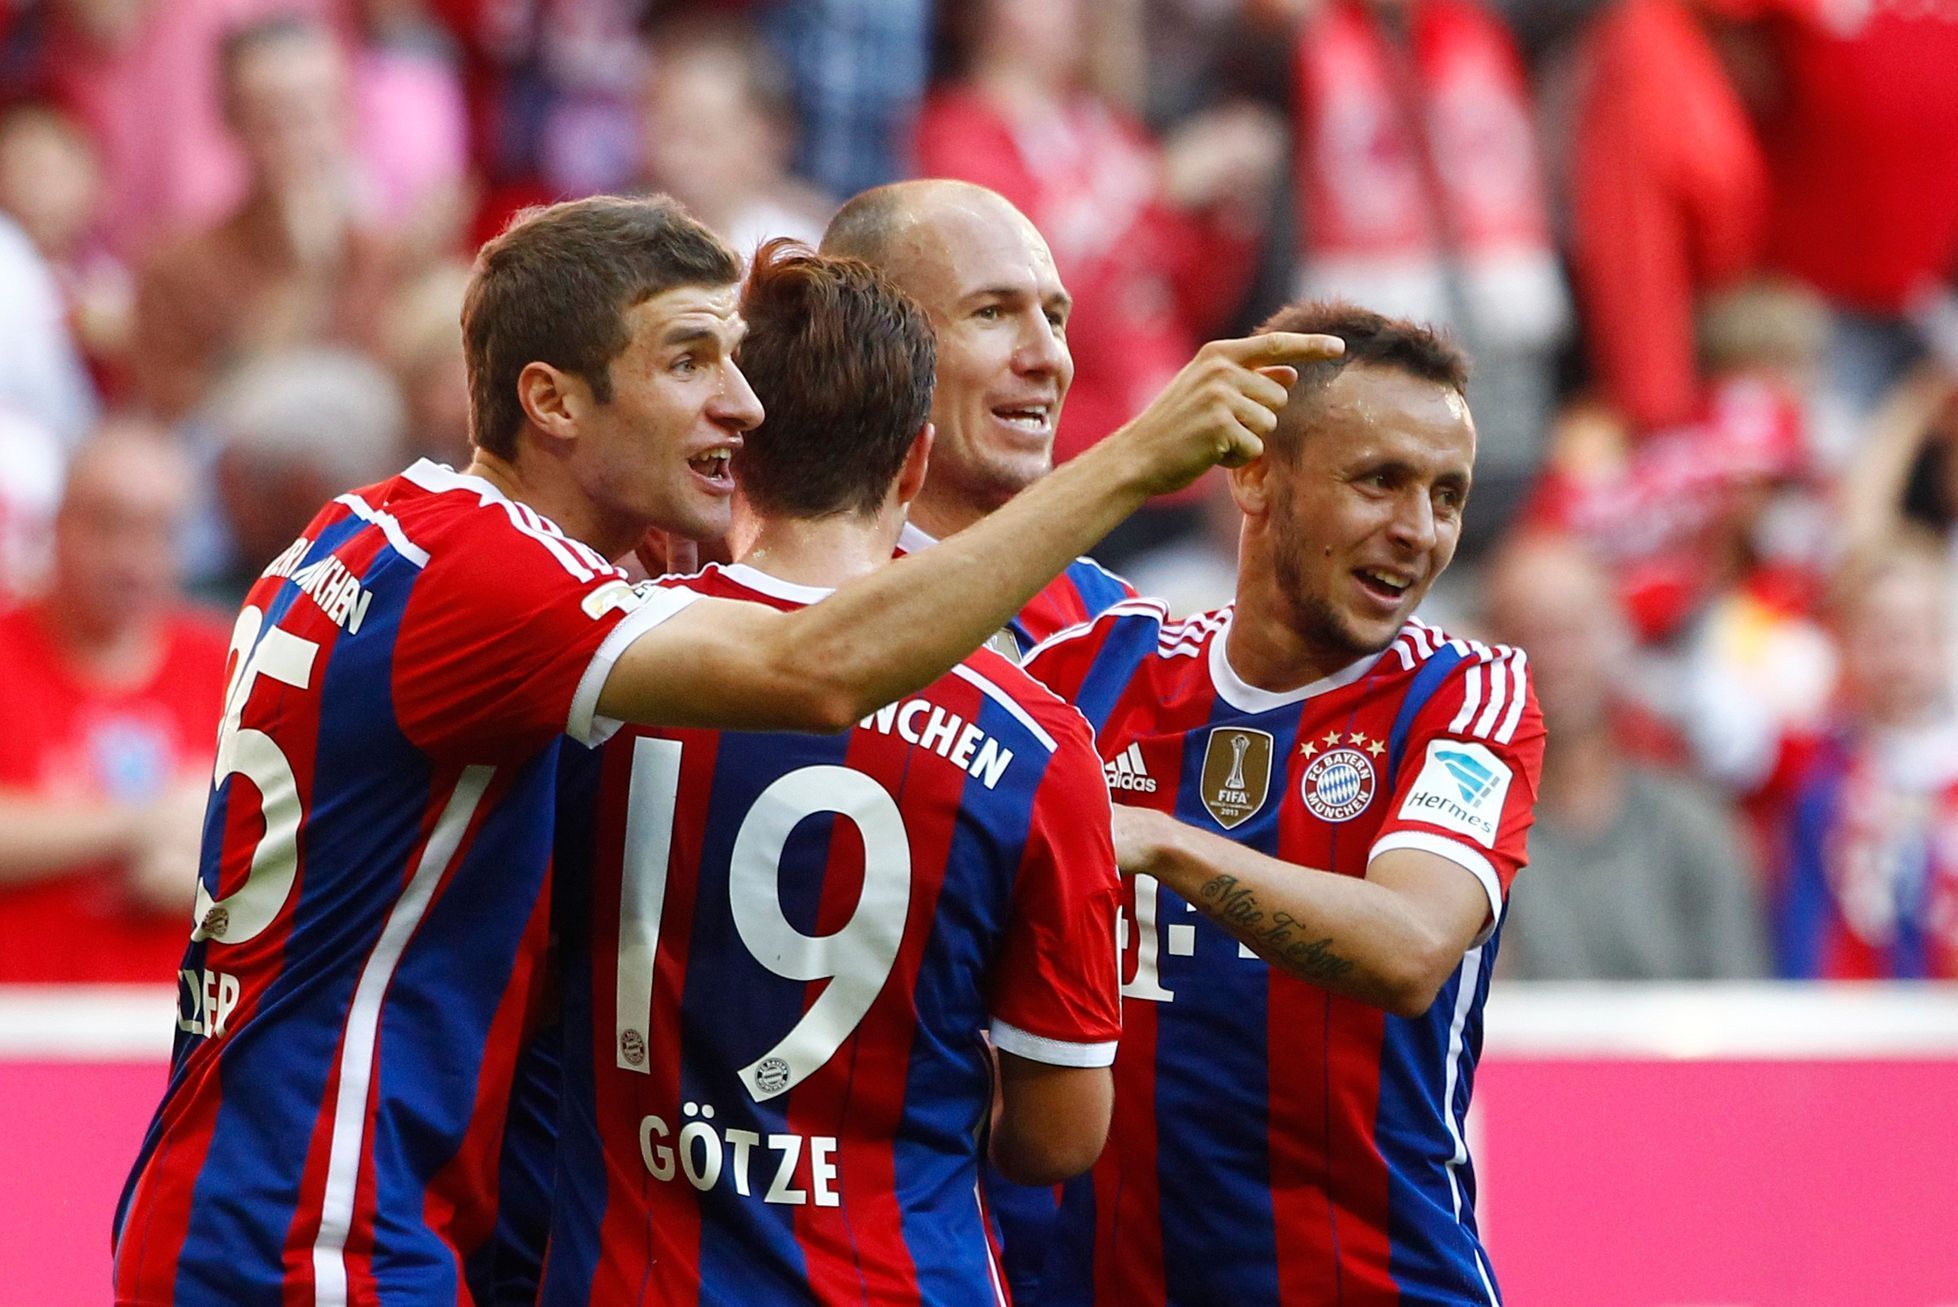 Gólová radost hráčů Bayernu Mnichov (Müller, Götze, Robben, Rafinha)